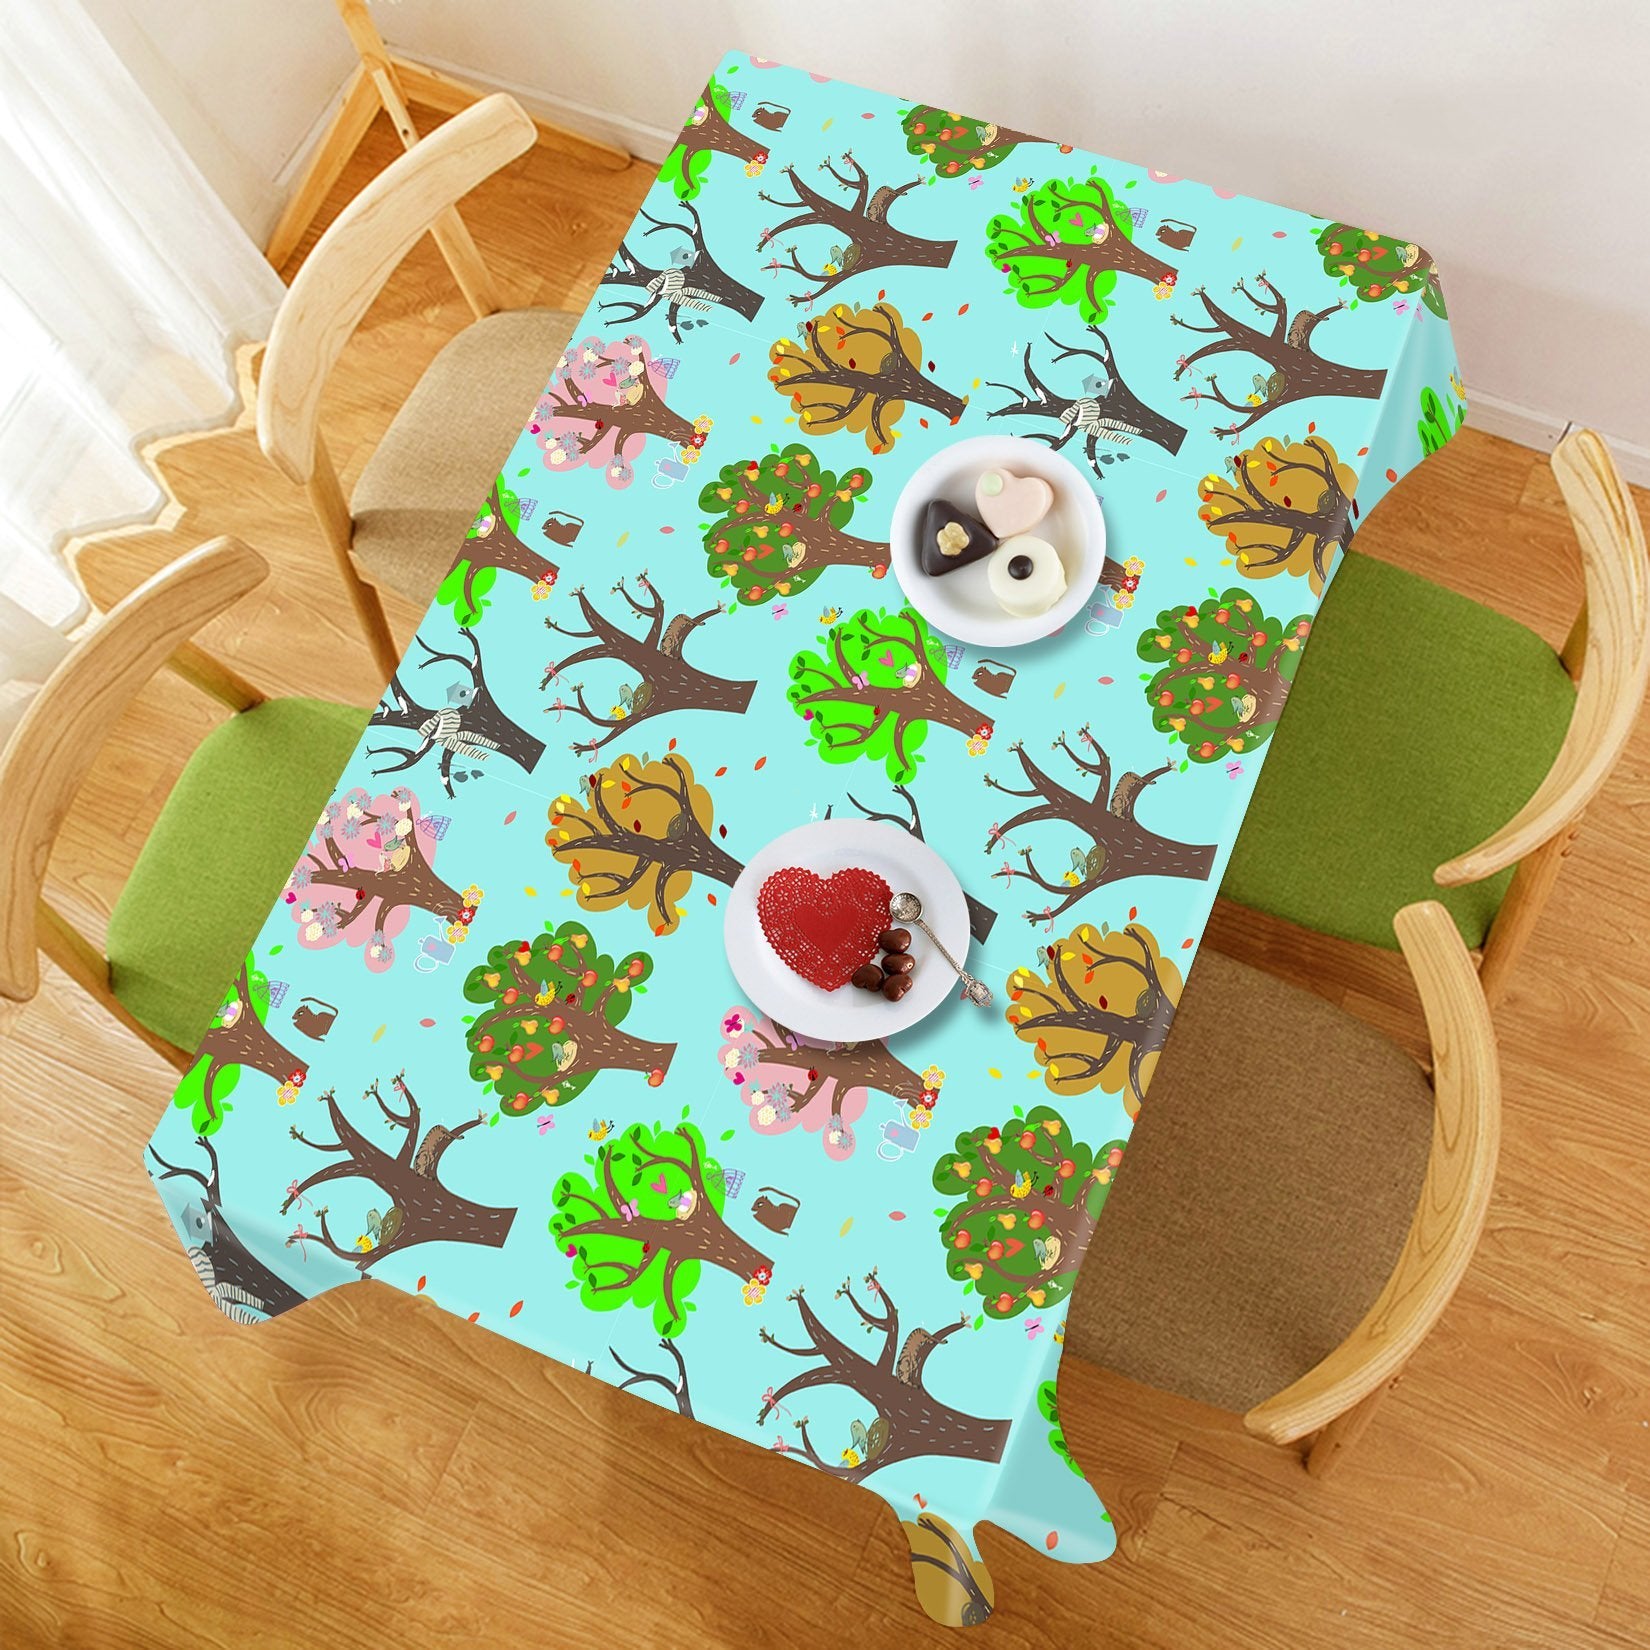 3D Trees Animals 576 Tablecloths Wallpaper AJ Wallpaper 